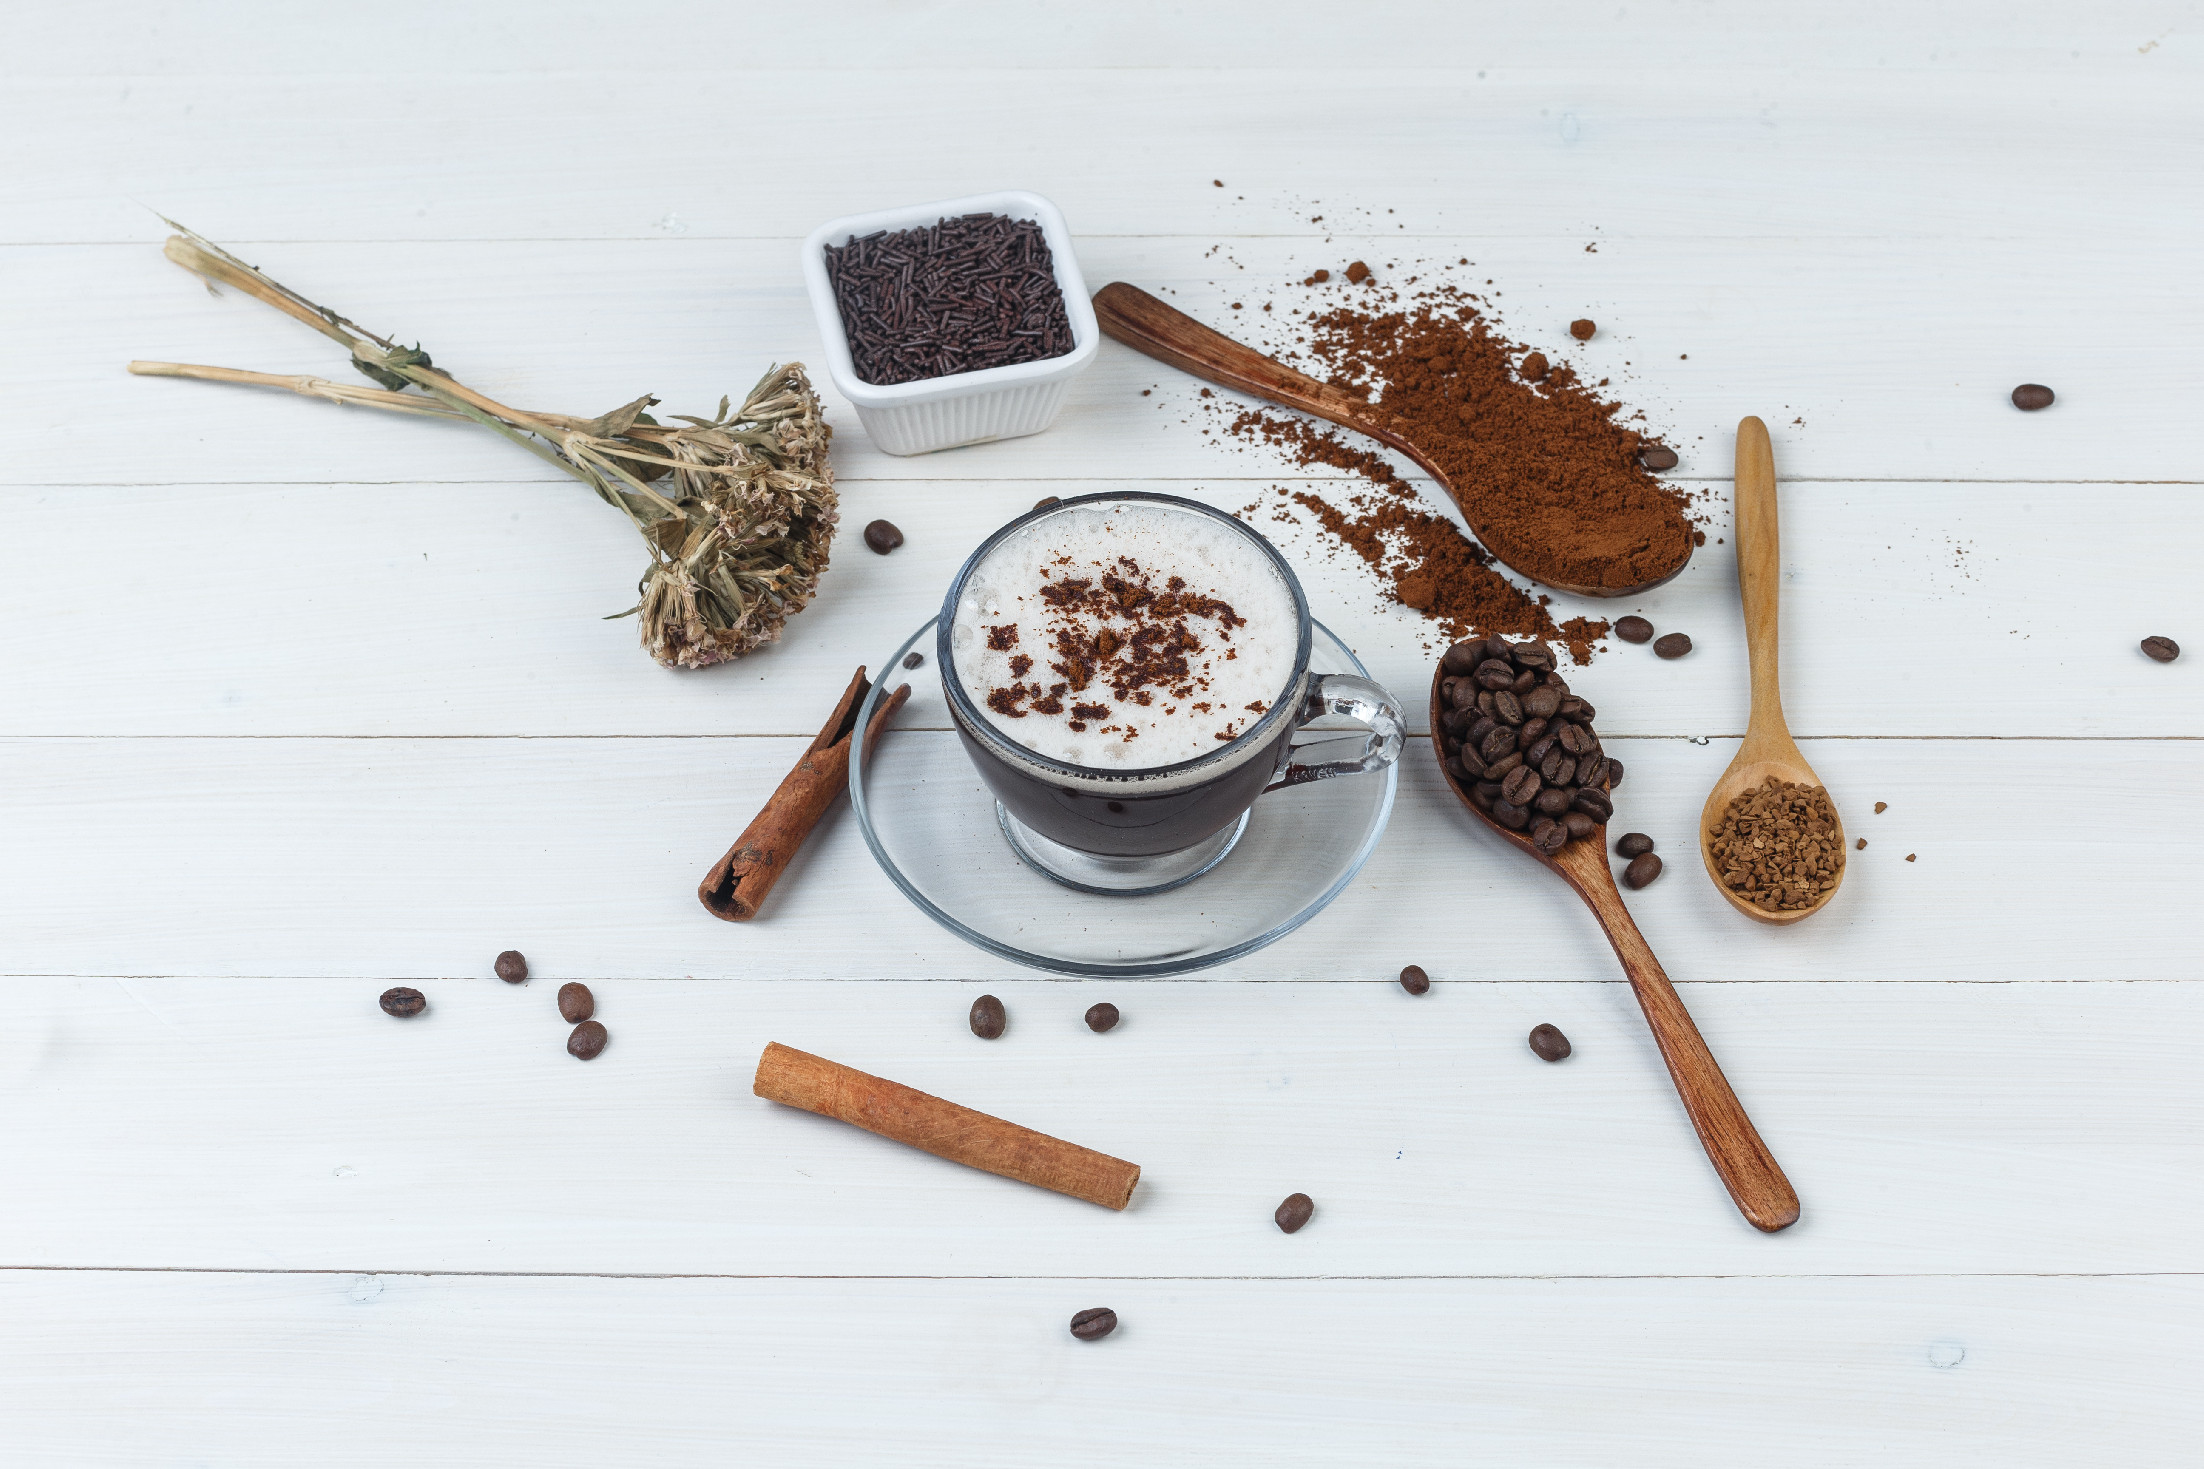 Dúsítsa a kávé zamatát házilag és élvezze a fűszerek jótékony hatását!